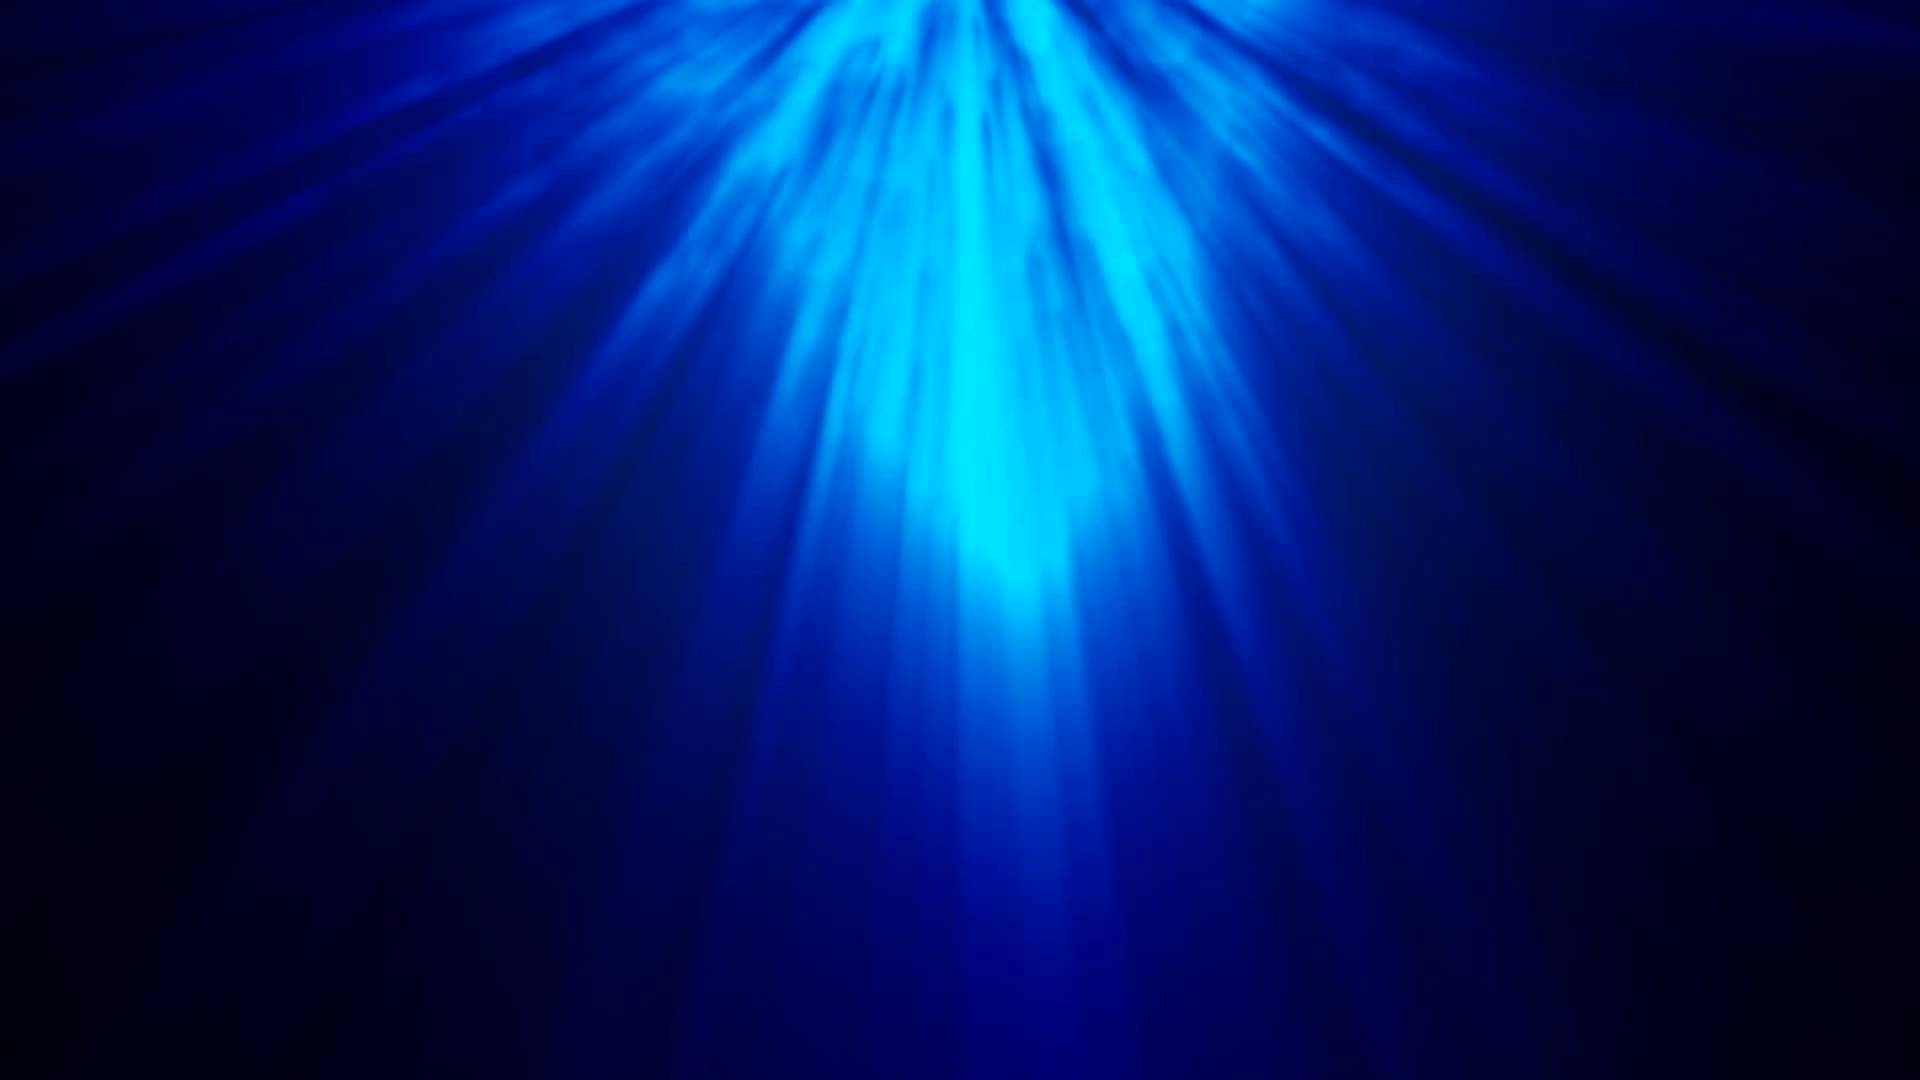 Light Blue Background for Photohop